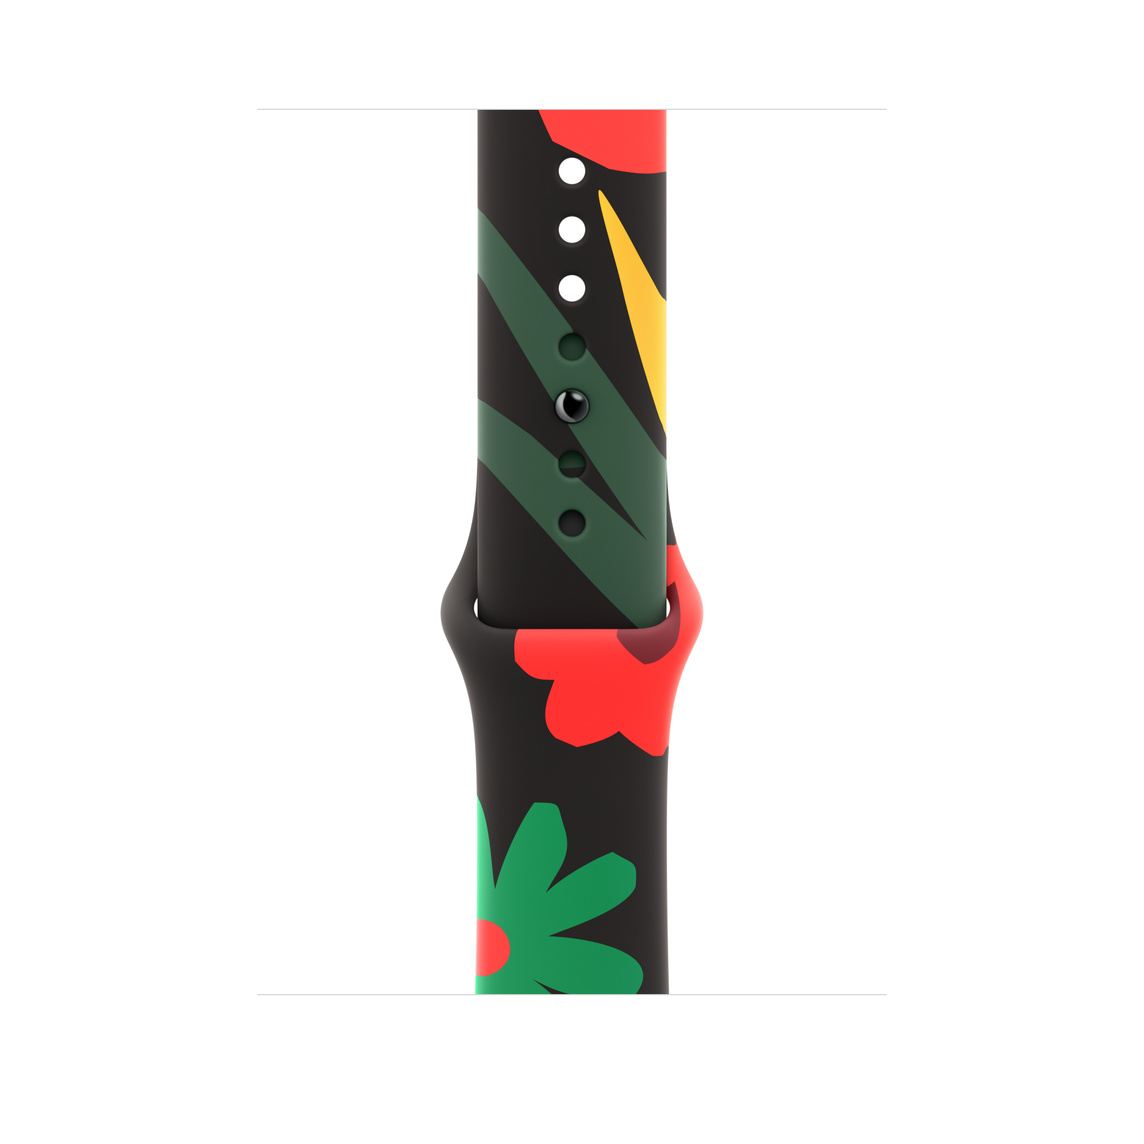 Sade bir tarzda ve kırmızı, yeşil, sarı renklerde çizilmiş farklı şekil ve boyutlarda çiçek resimlerine sahip Birlik Buketi tasarımlı Black Unity Spor Kordon.